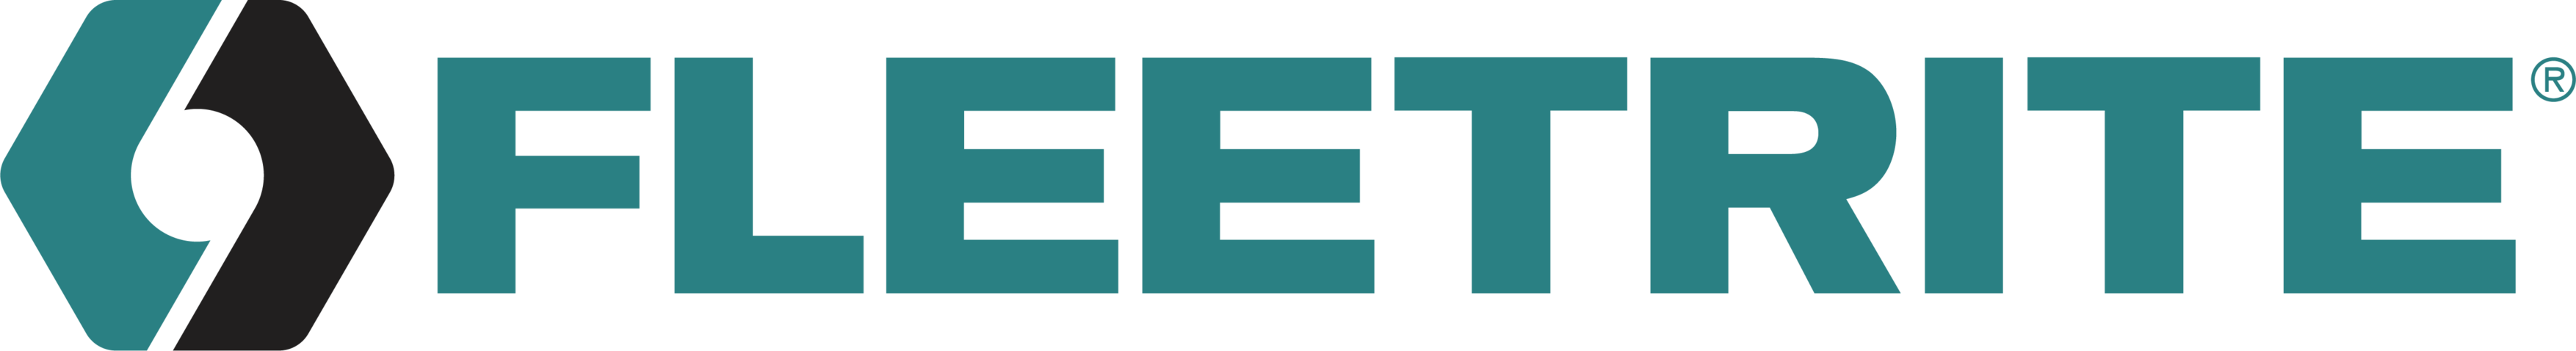 Fleetrite_Logo